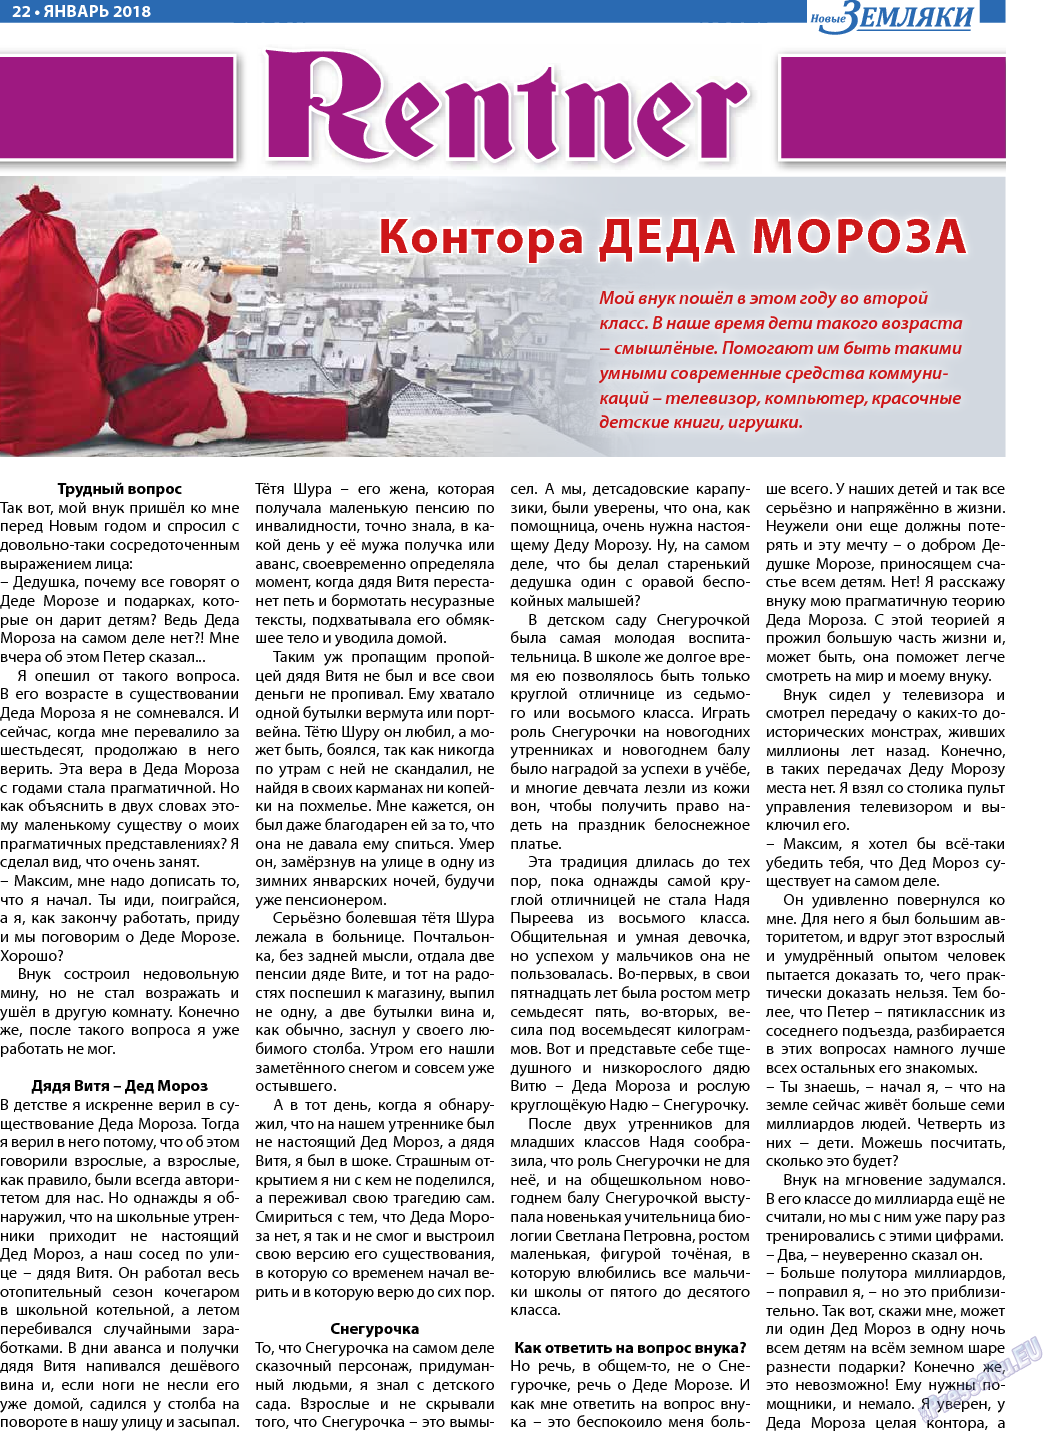 Новые Земляки, газета. 2018 №1 стр.22